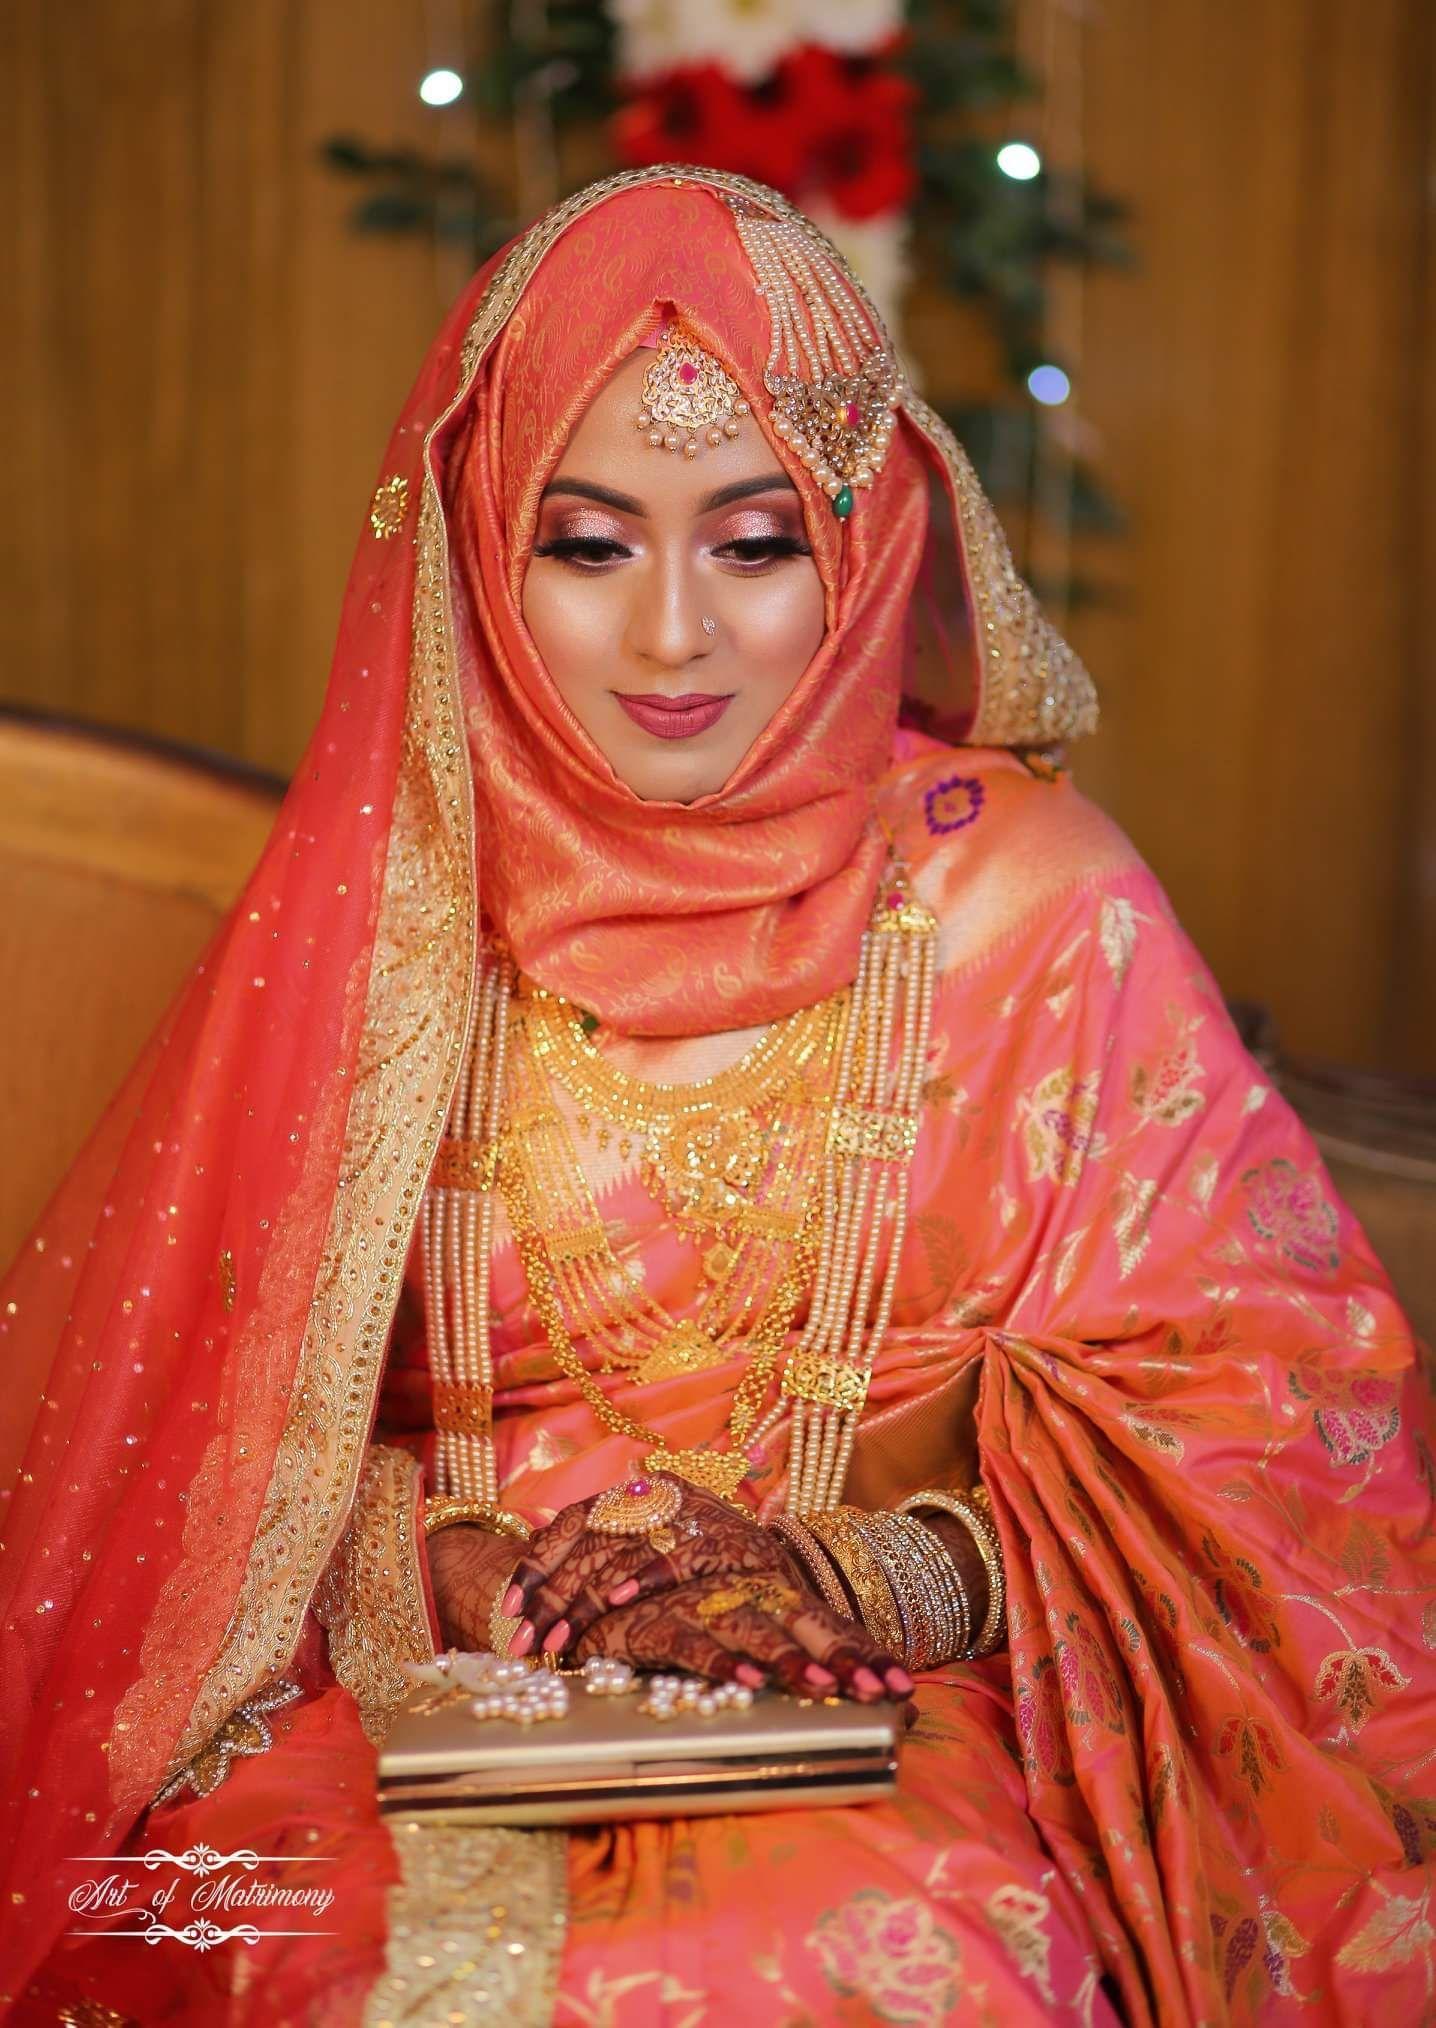 Muslim Wedding Wallpapers - Top Free Muslim Wedding ...